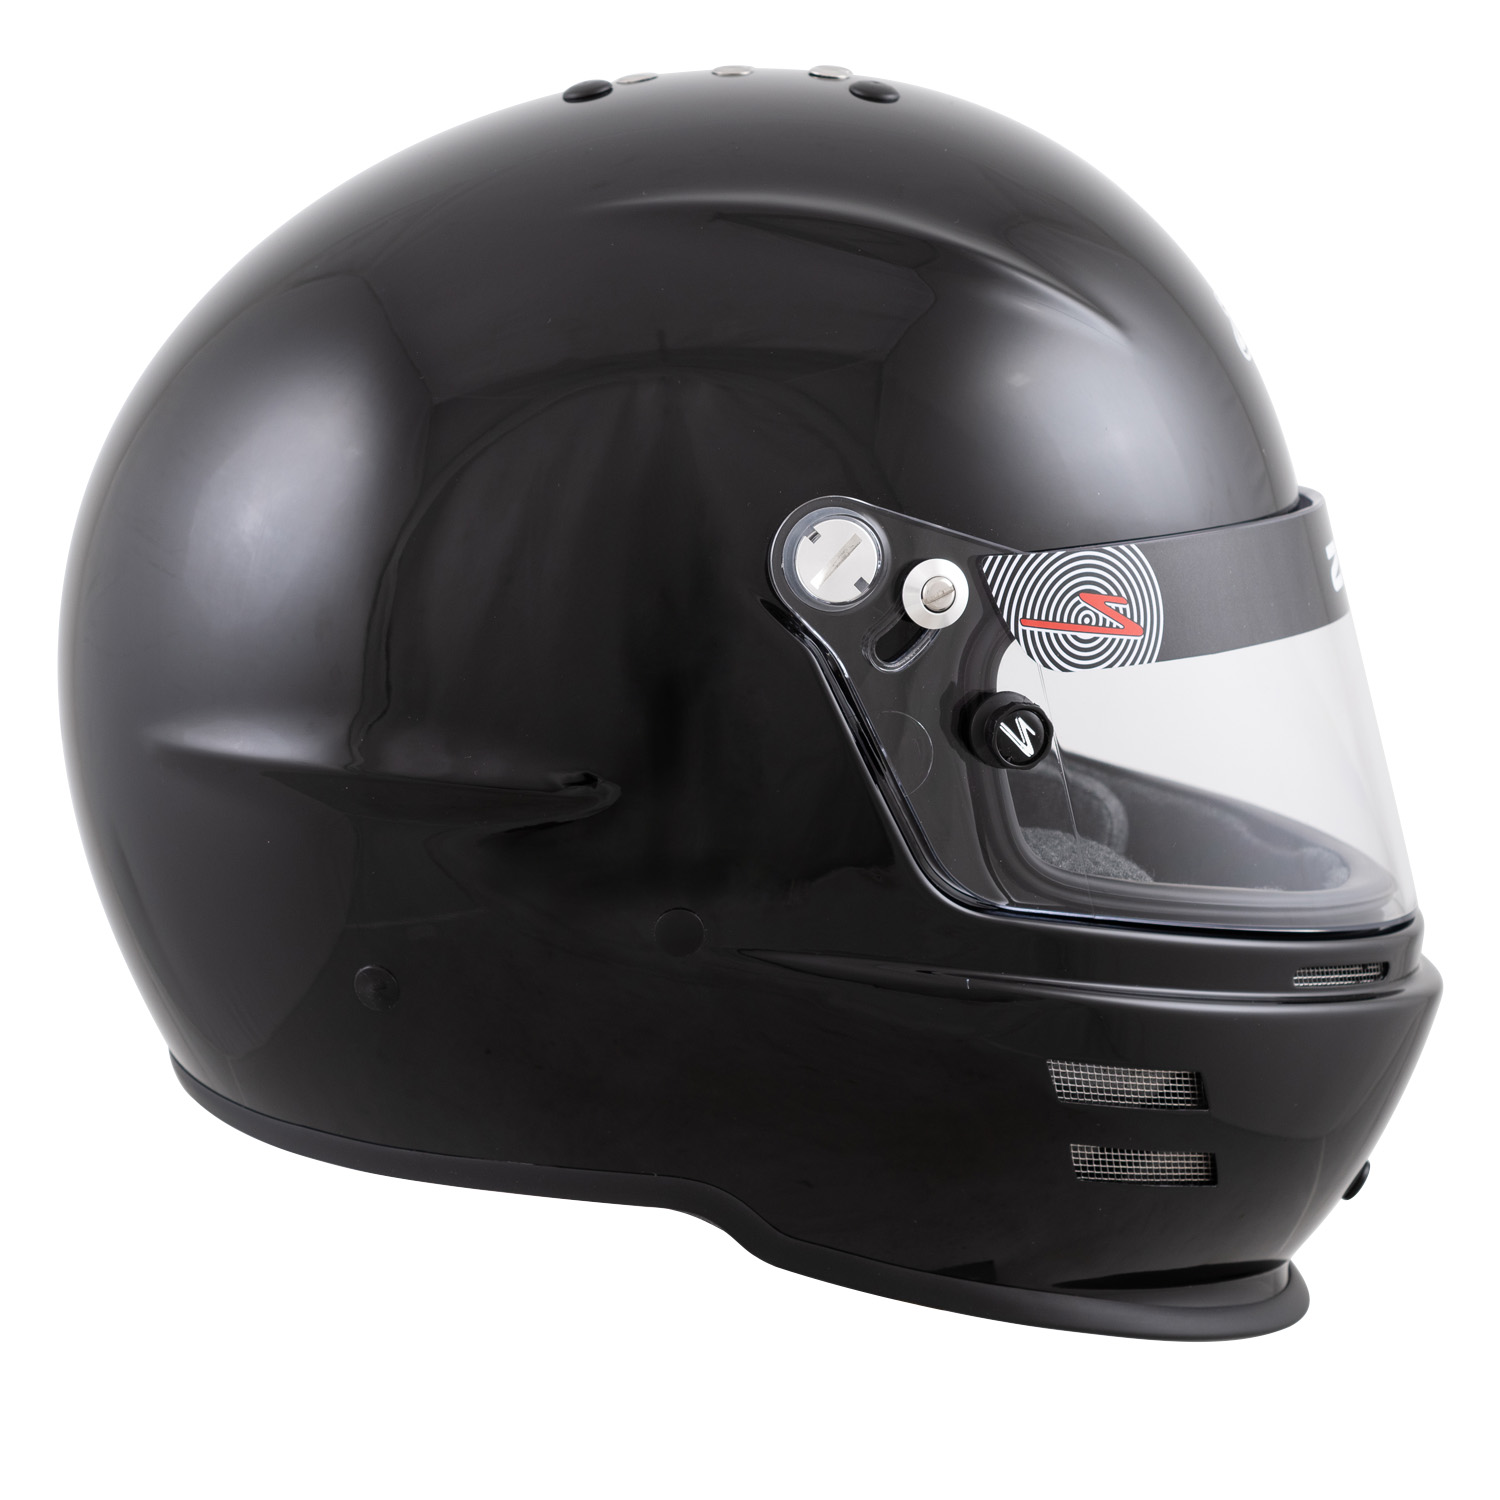 Zamp Shield Retention Kit for All RZ Type Visor & Helmets Black Gold Blue Red 